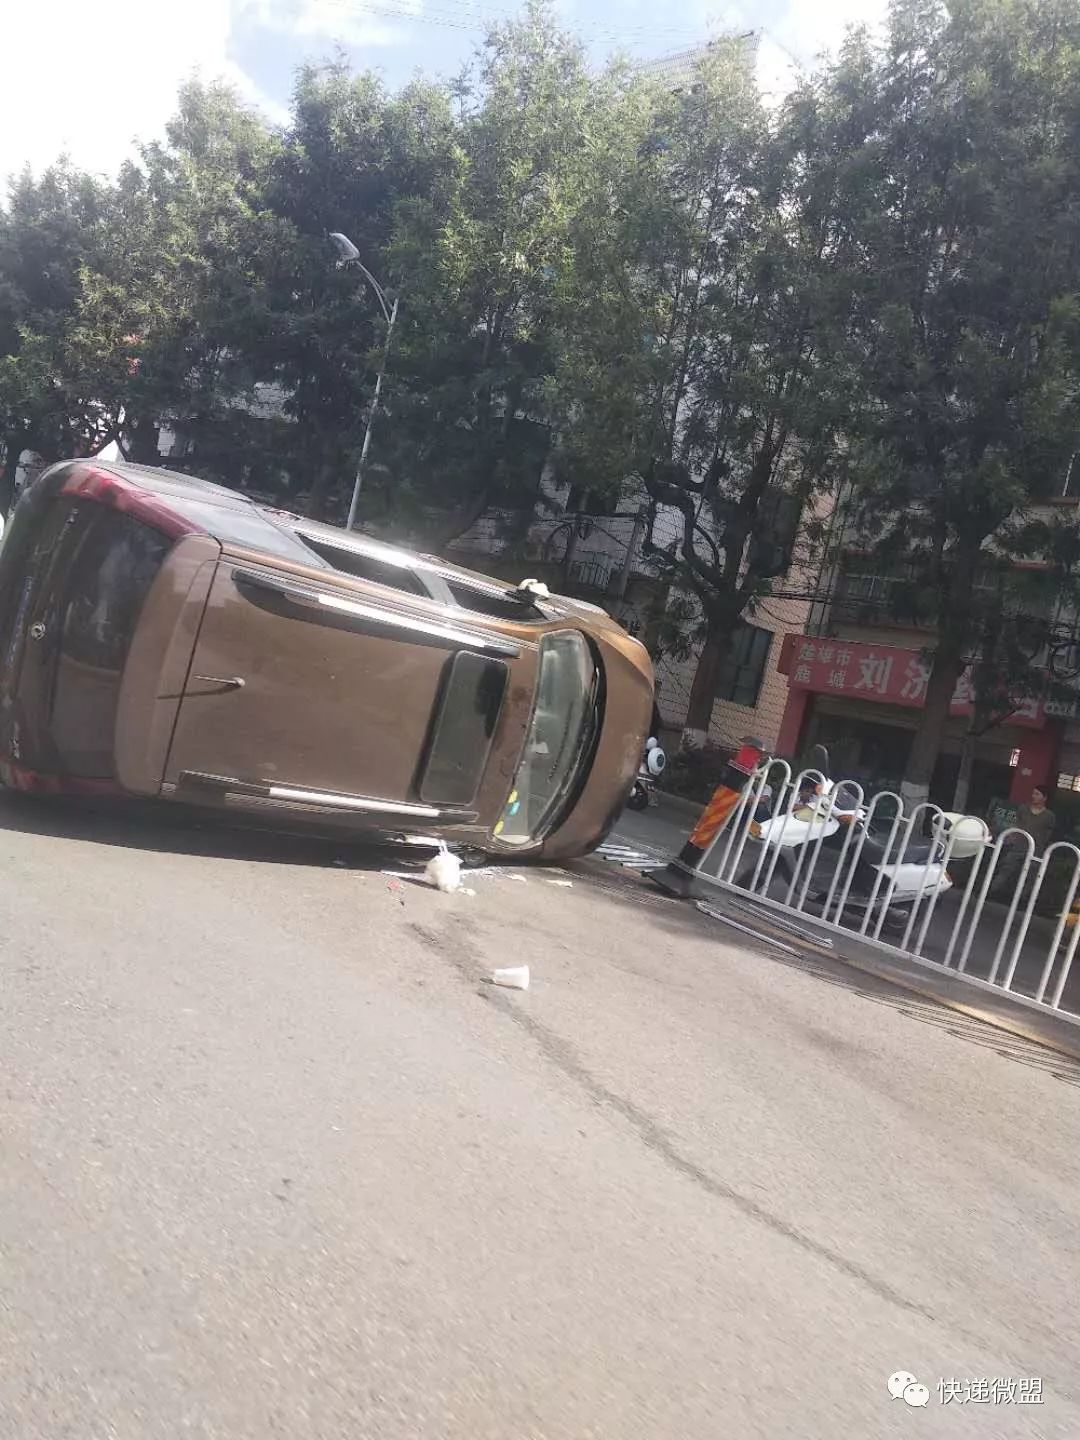 【交通事故】楚雄南门坡路段再发车祸,一辆suv撞倒隔离栏侧翻于路面